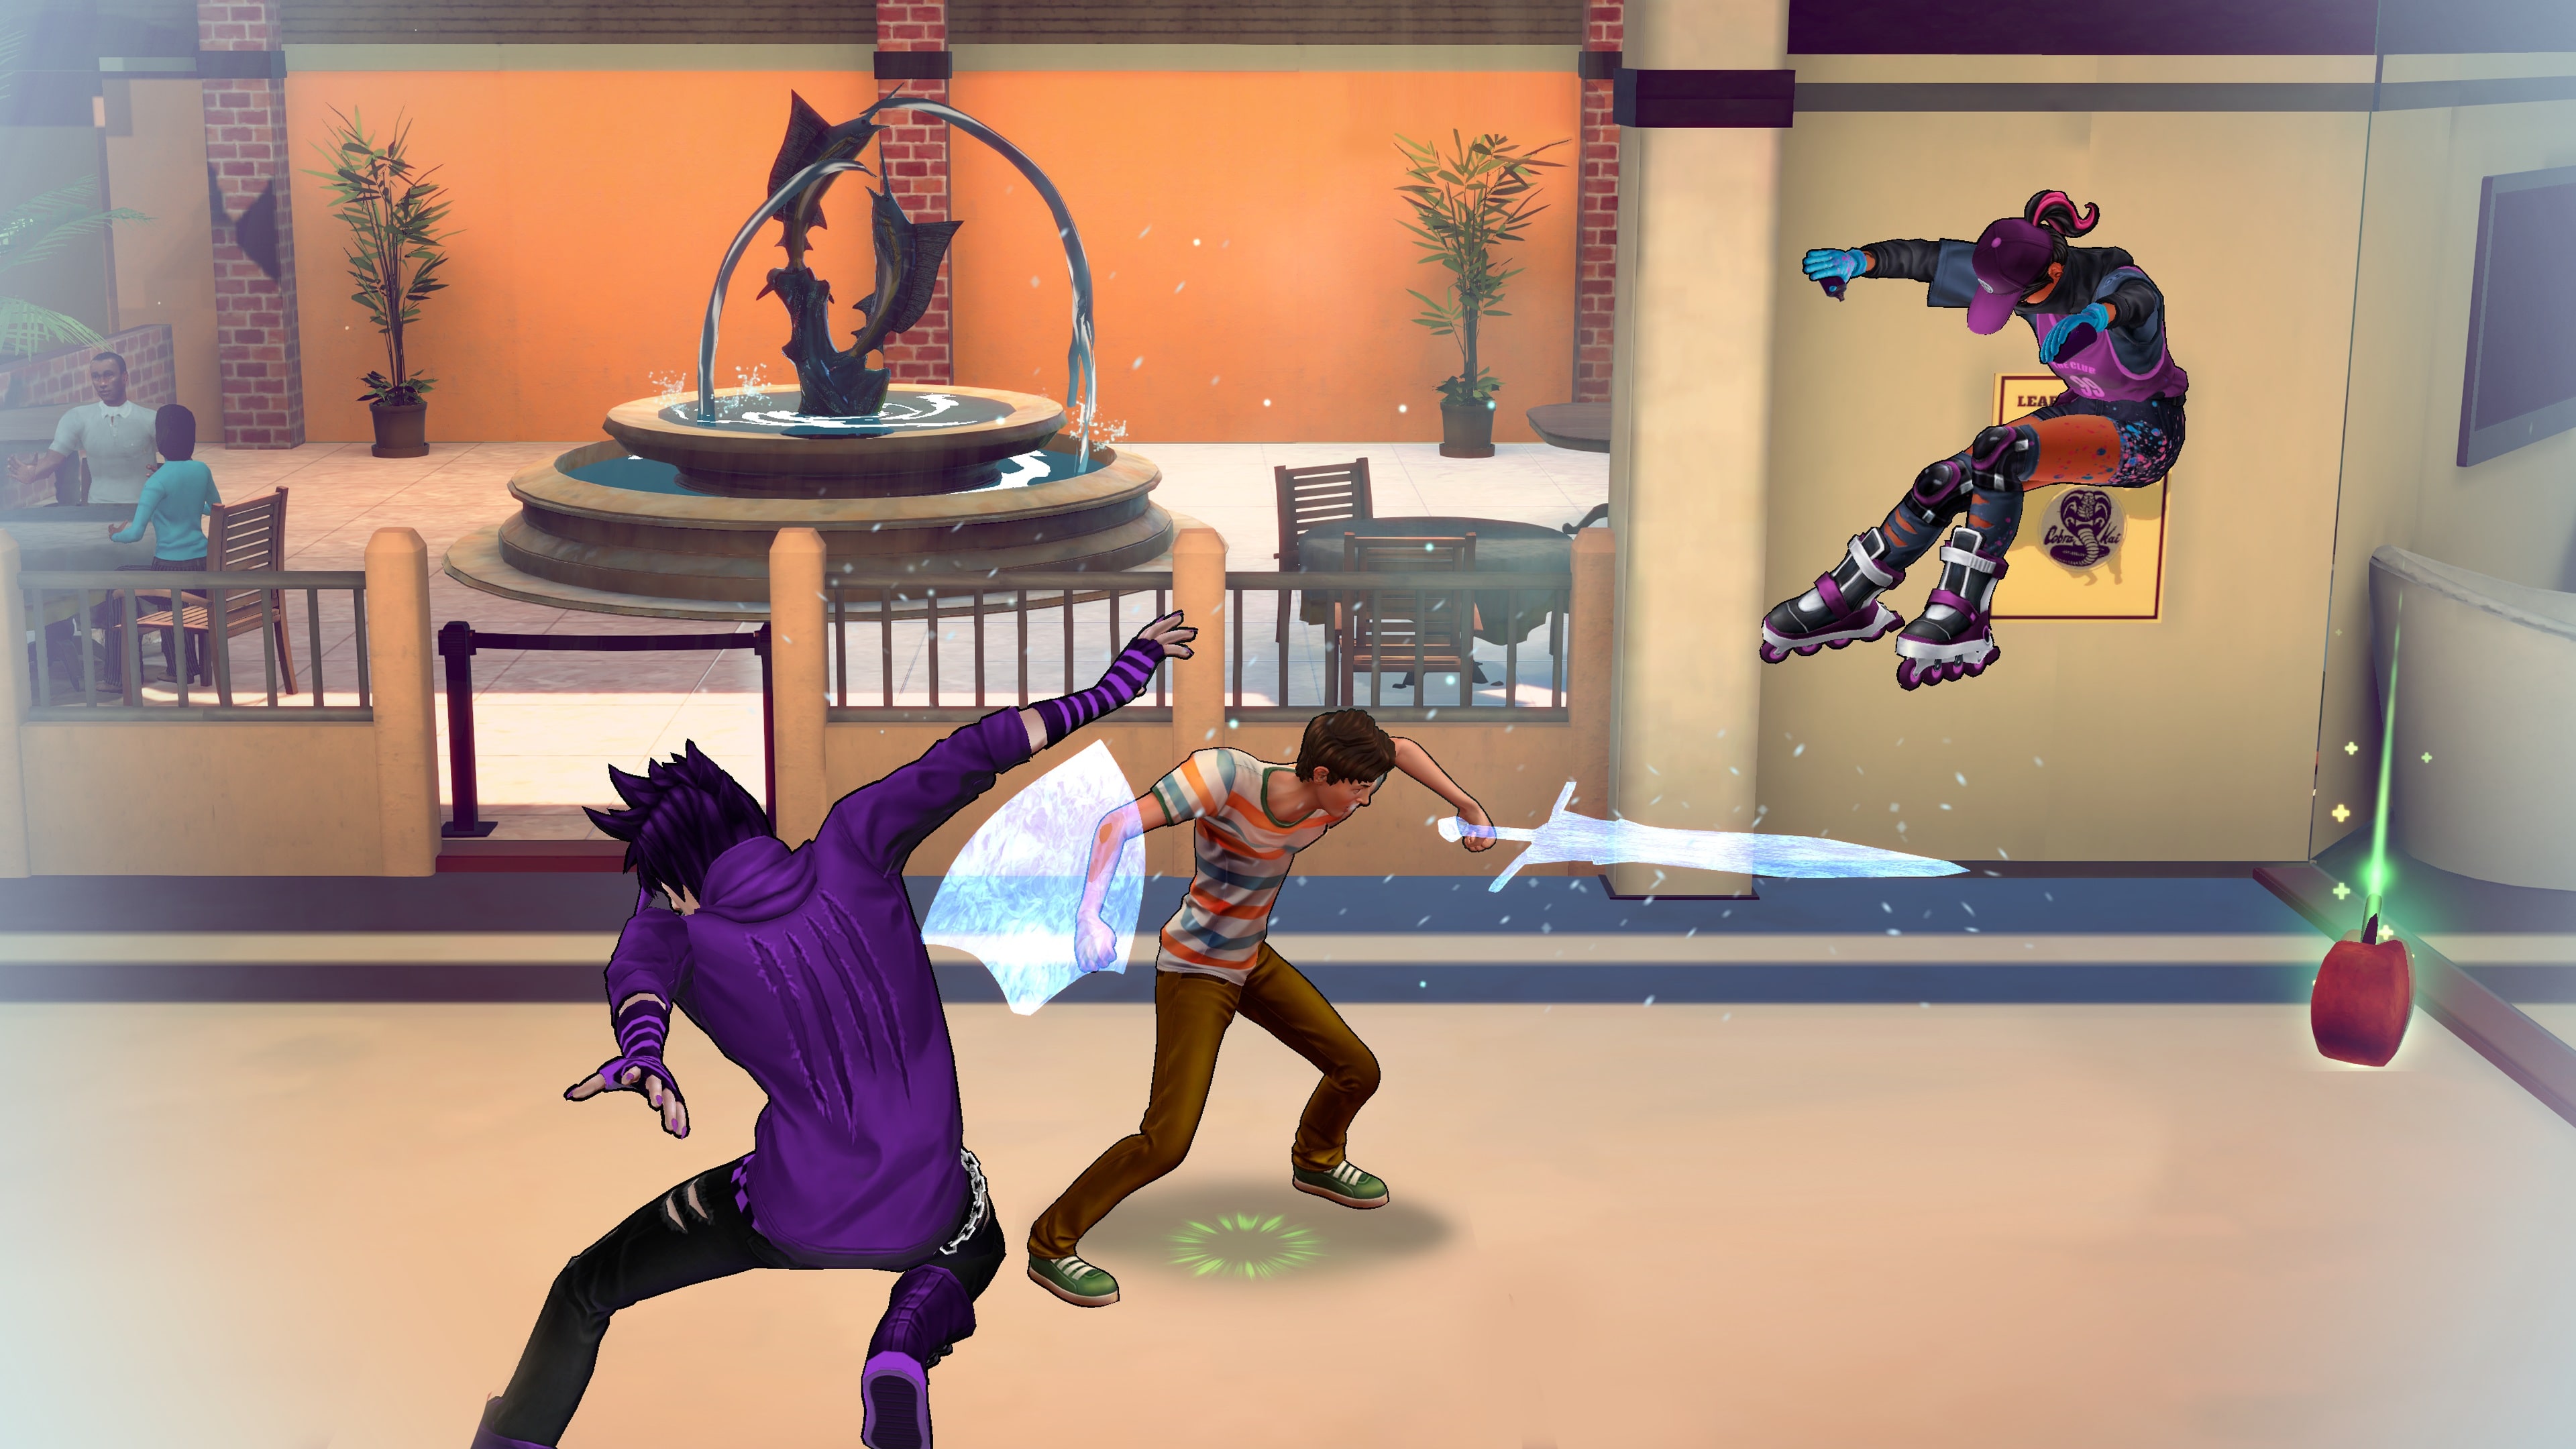 Jogo de 'Cobra Kai' é anunciado para PlayStation 4 e Xbox One